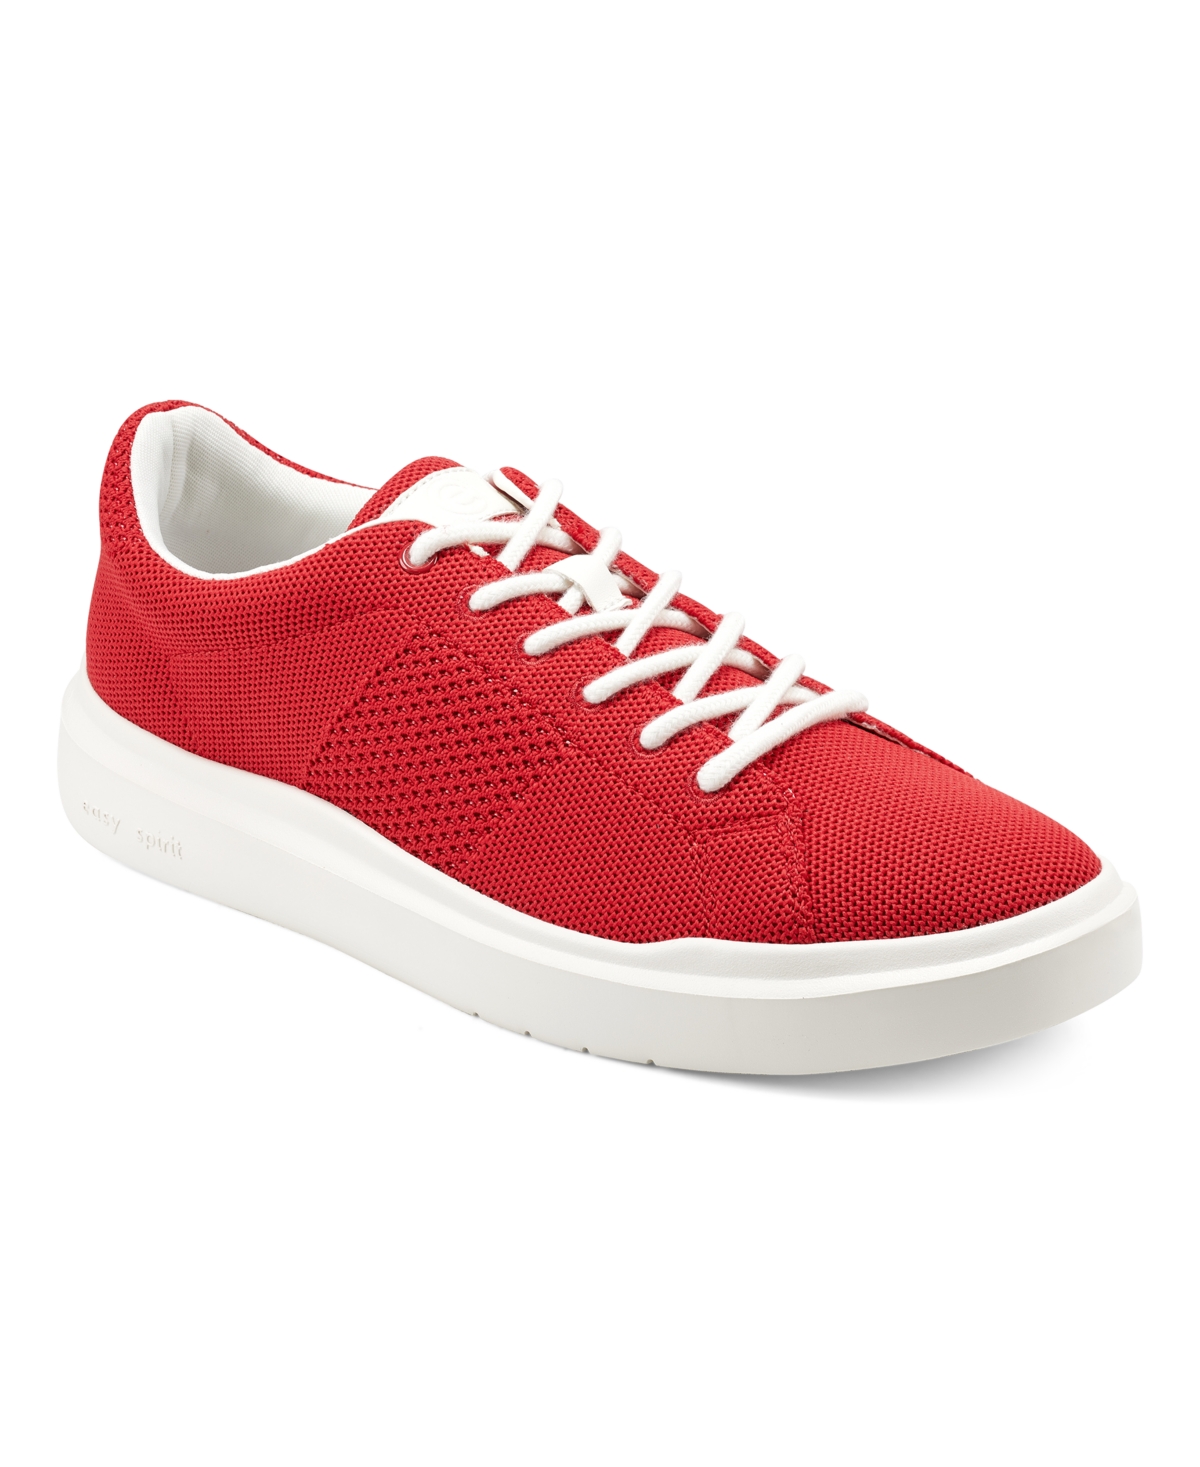 Men's Darin Casual Sneakers - Red